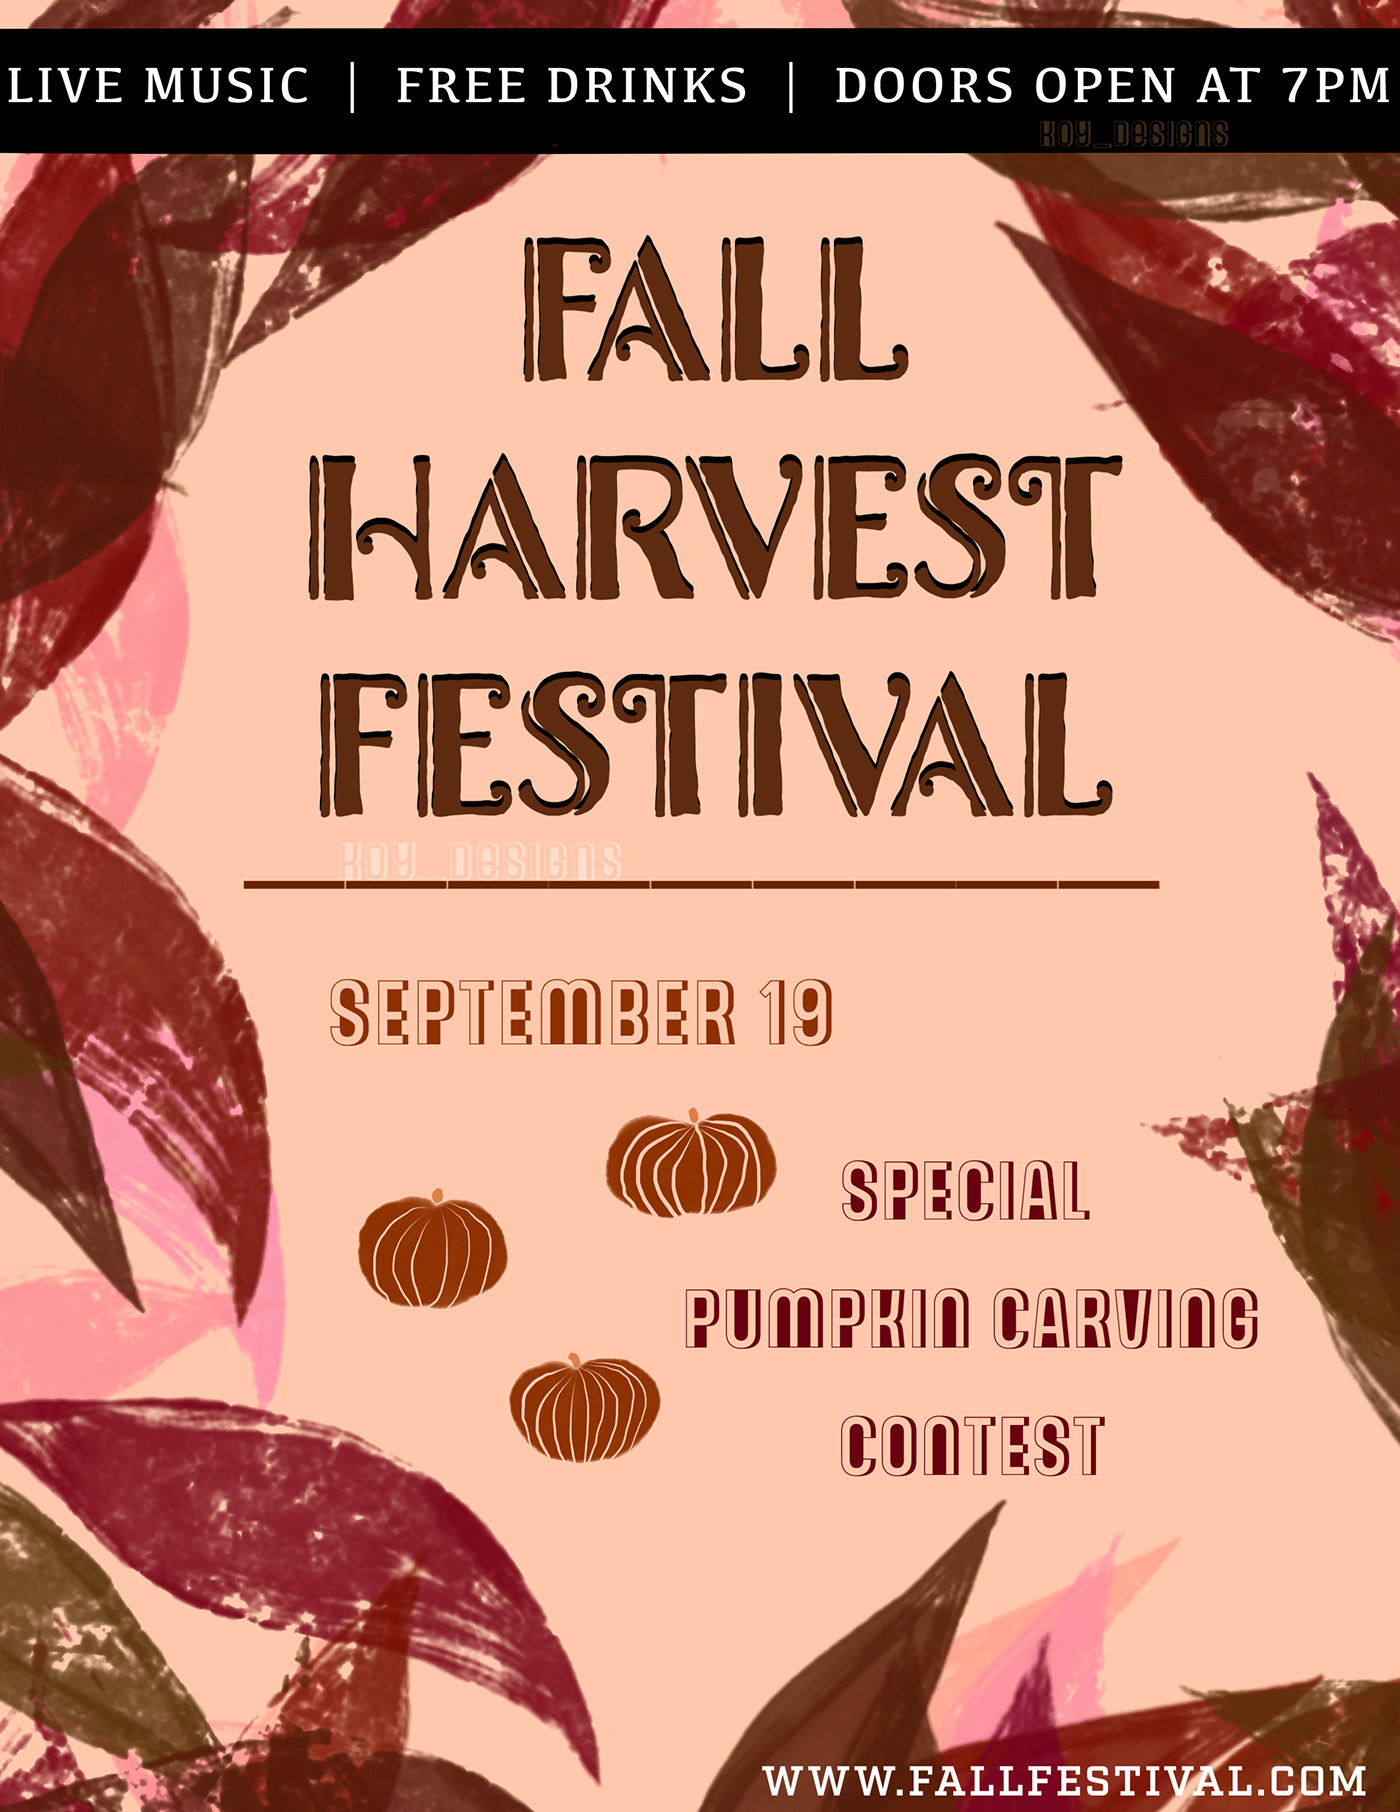 autumn design Digital Art  Fall festival flyer Flyer Design graphic design  harvest poster Poster Design pumpkin